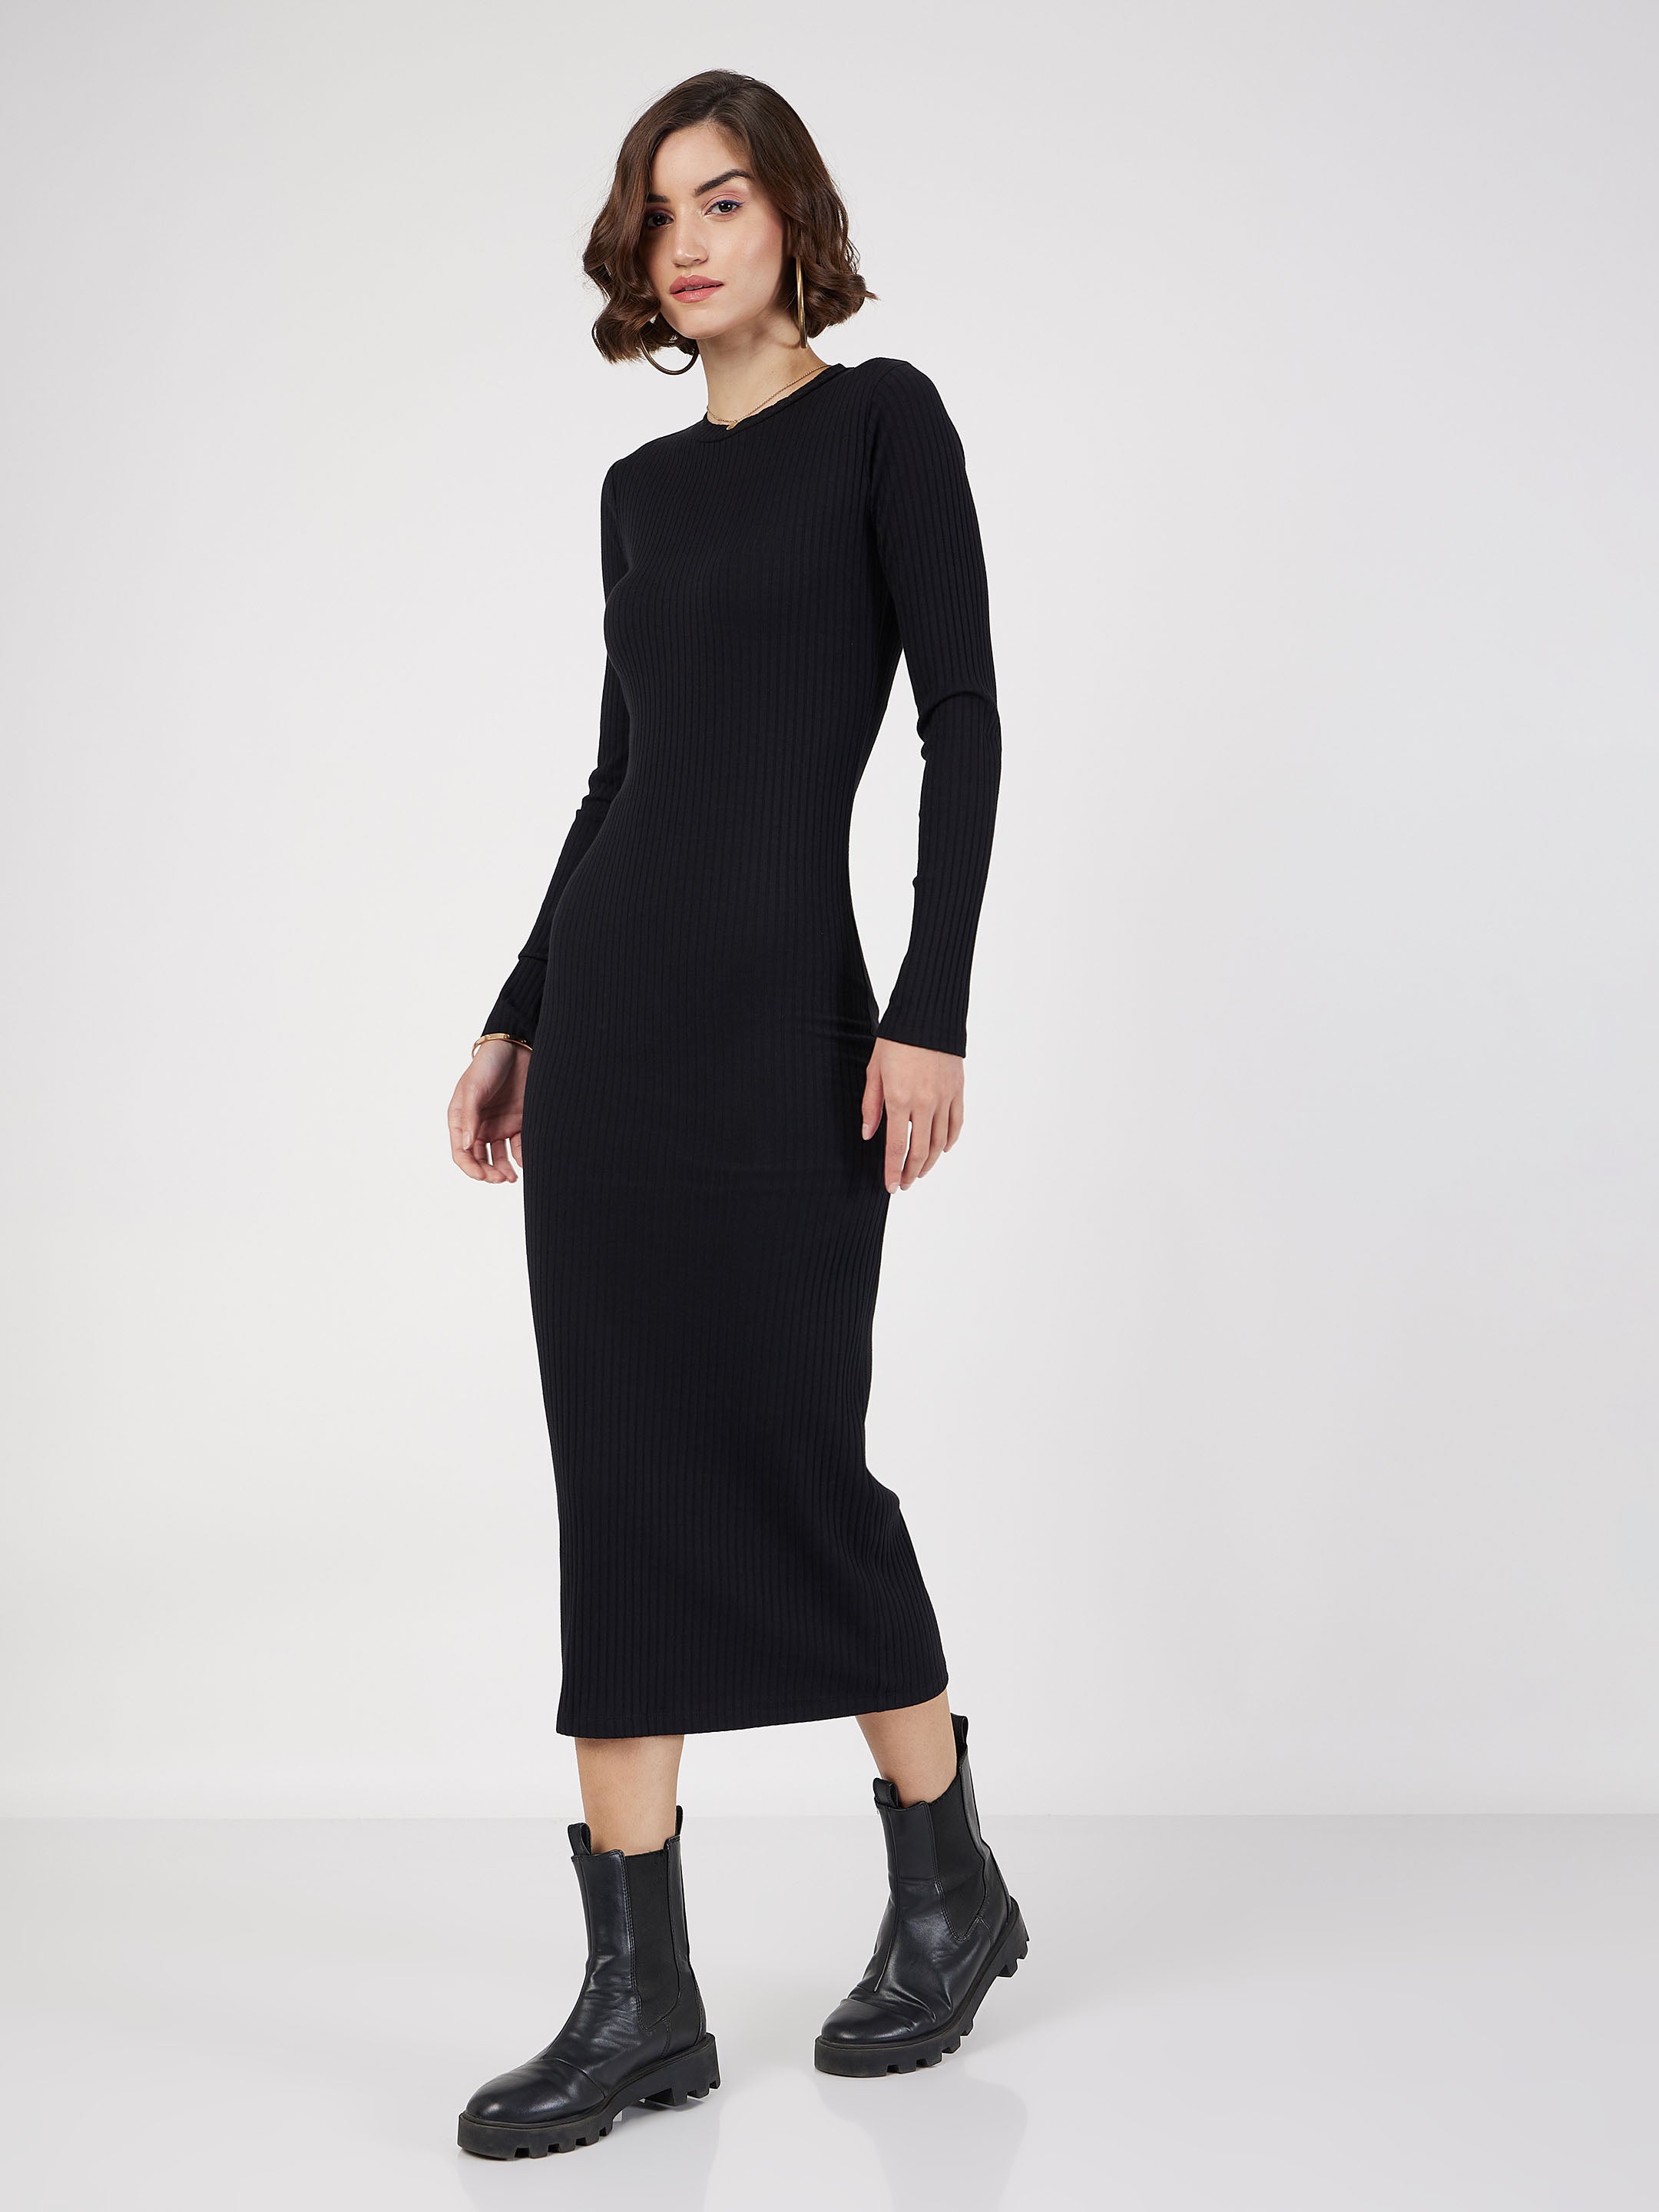 Women's Black Rib Bodycon Midi Dress - Lyush